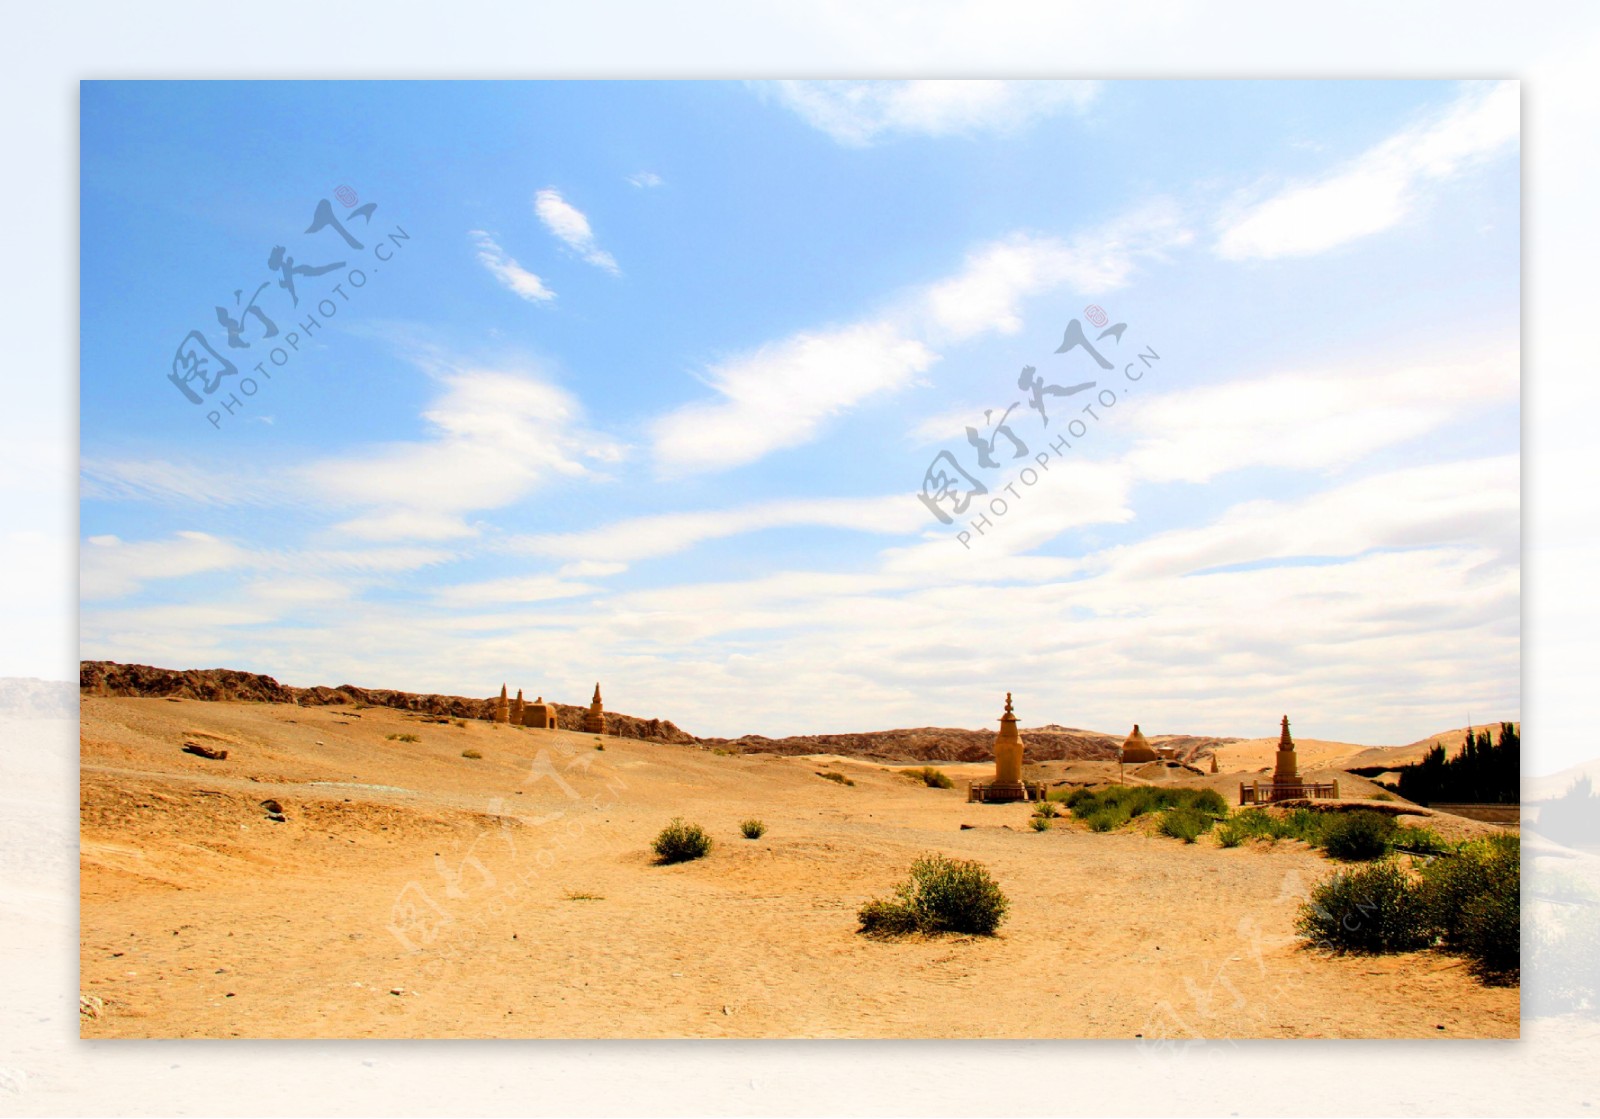 沙漠黄昏景色图片